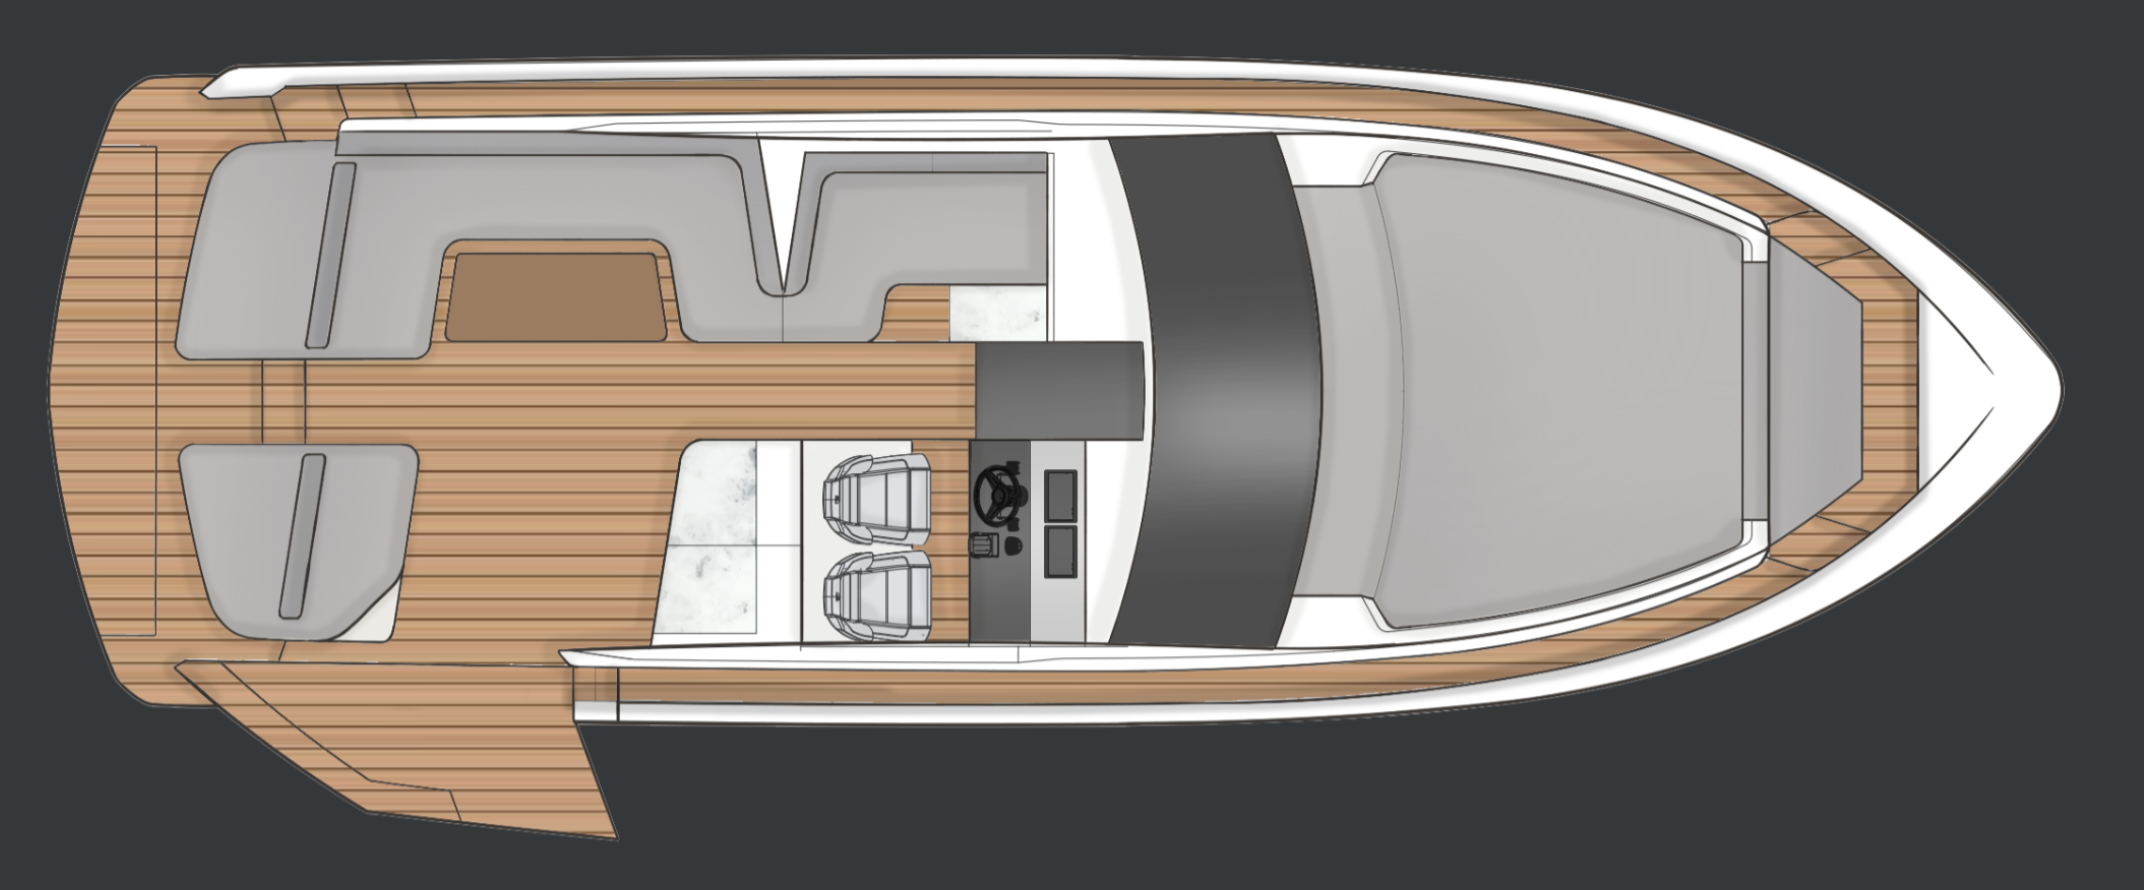 Fairline Targa 40, New Fairline yacht